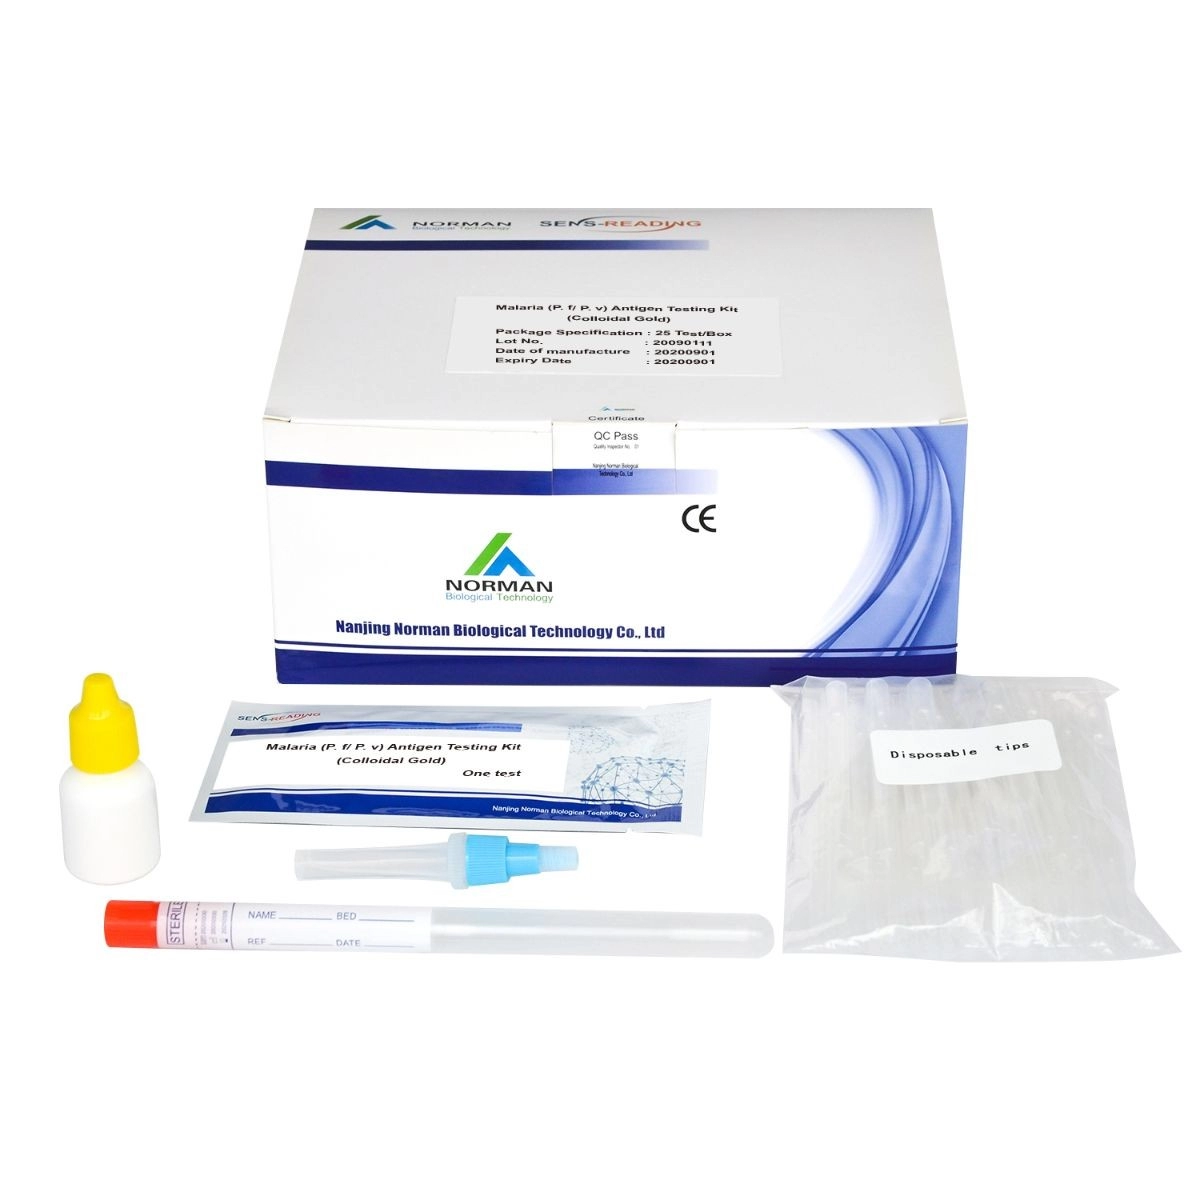 Kit de prueba de antígeno de malaria (P. f P. v)